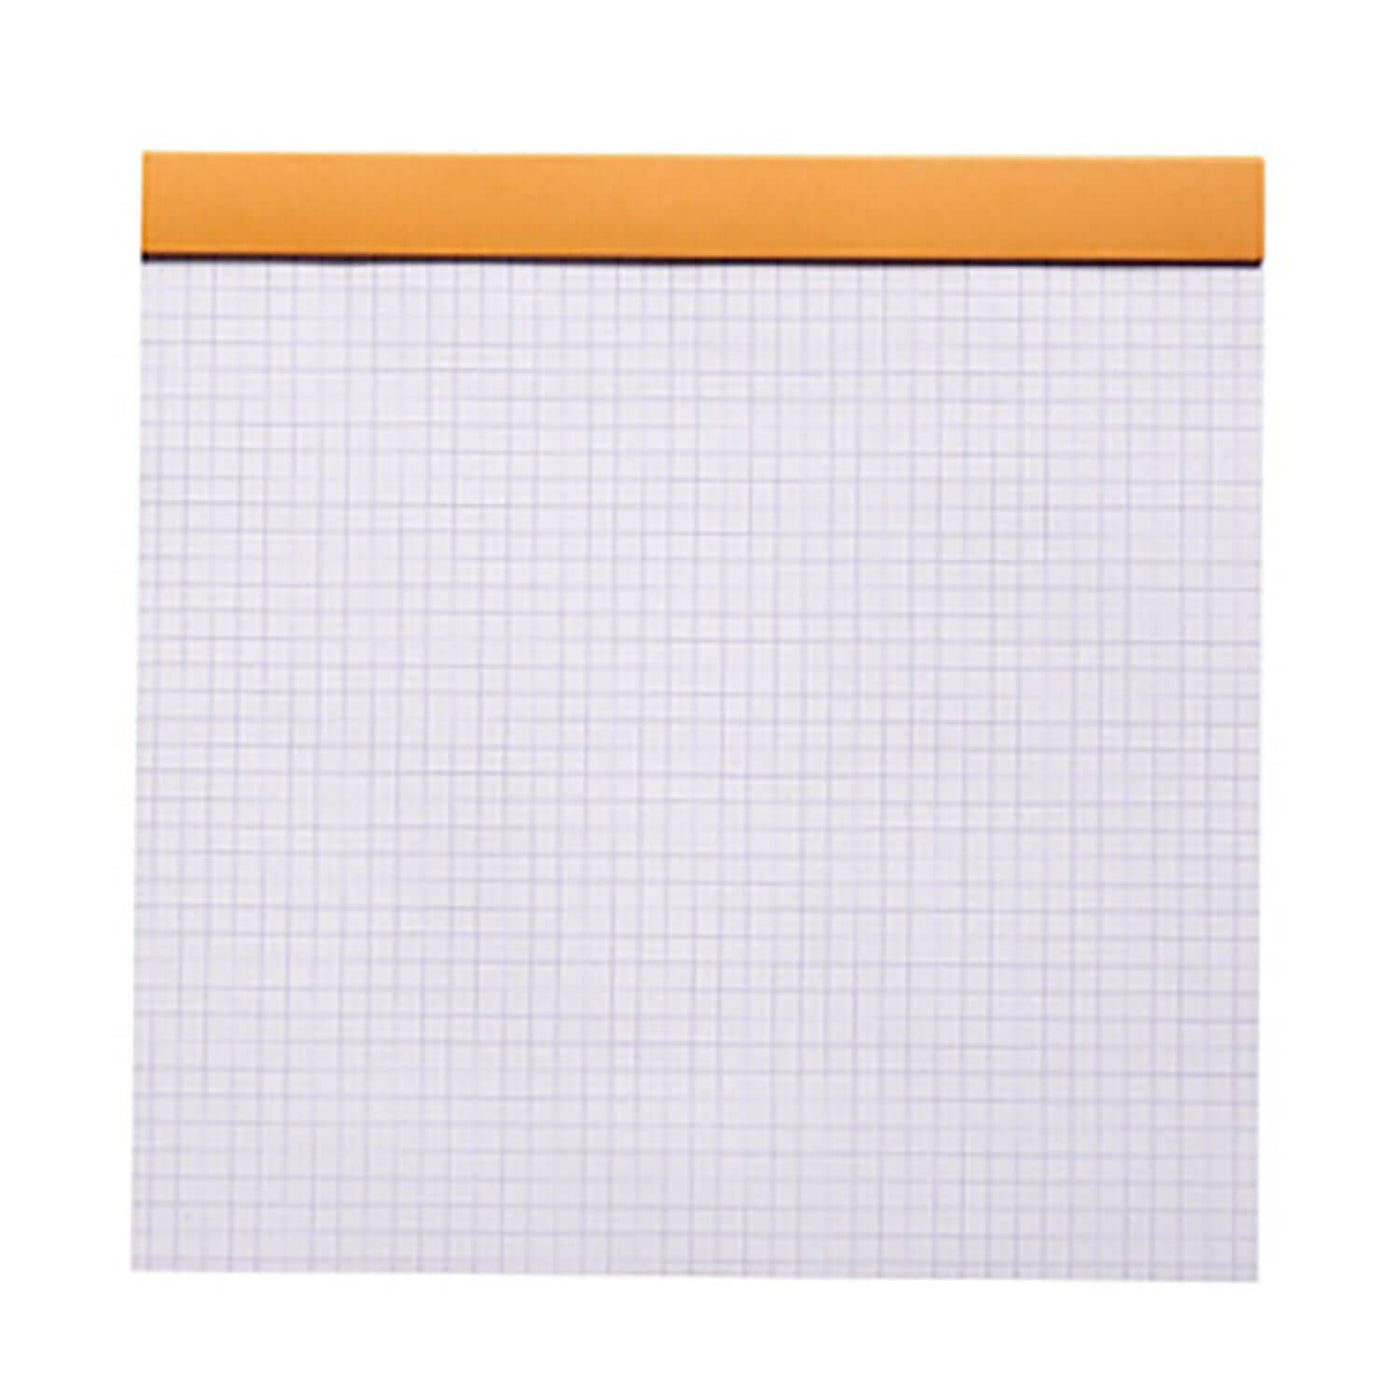 Rhodia Le Carre Notepad, Orange - Ruled 3